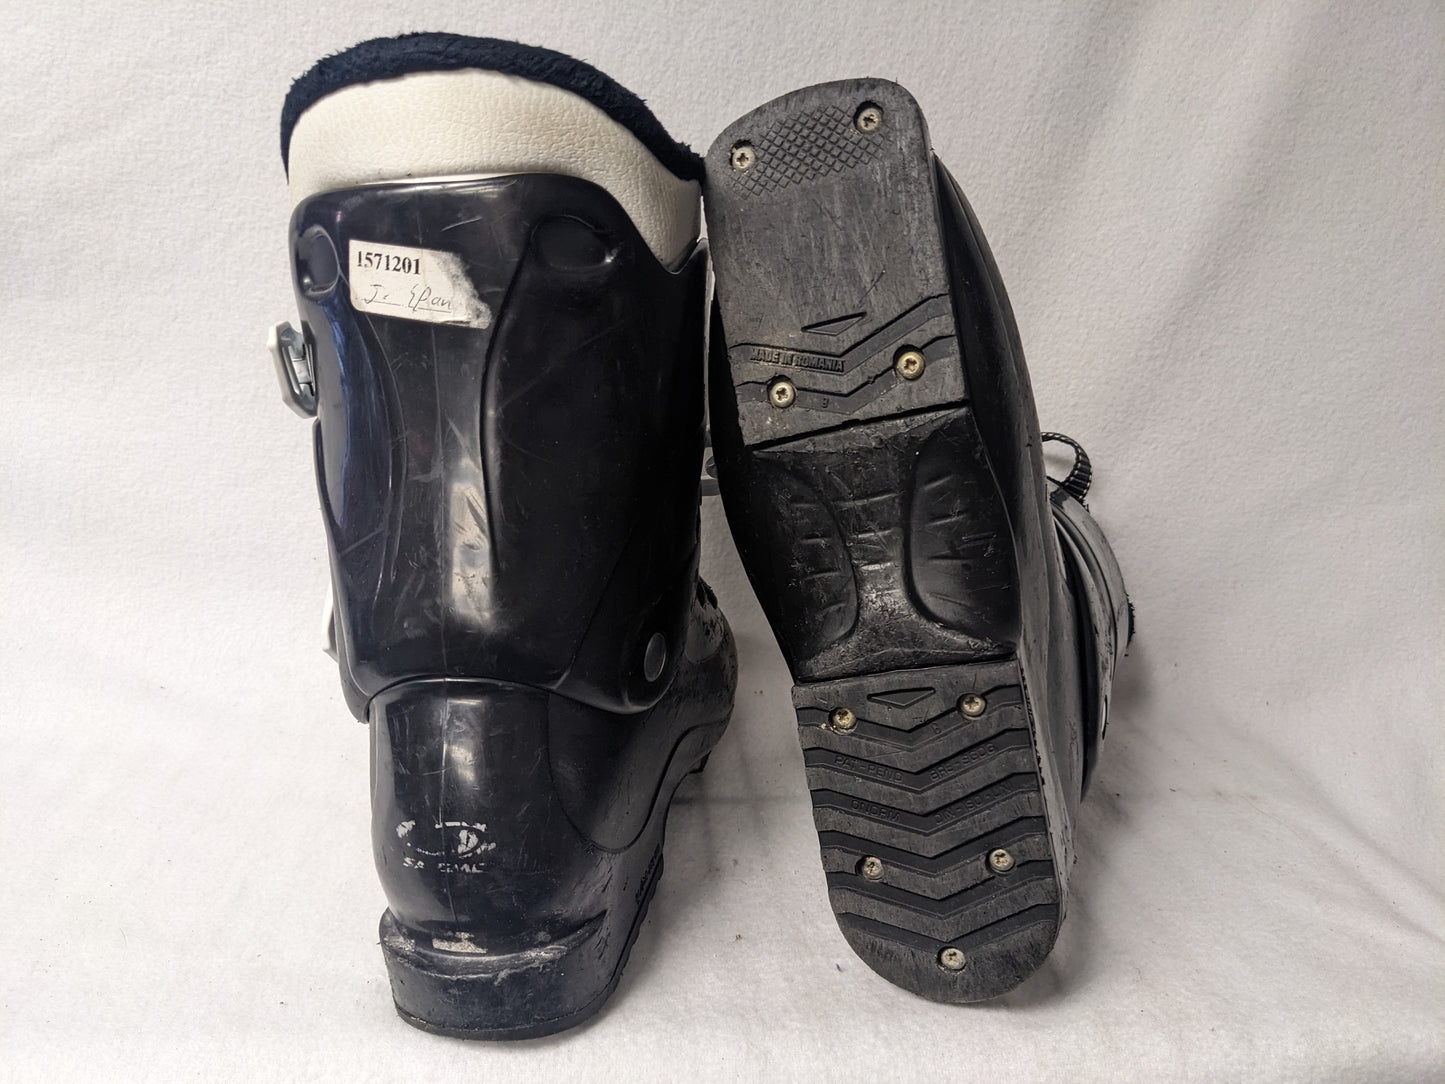 Salomon Team Ski Boots Size 24.5 Color Black Condition Used